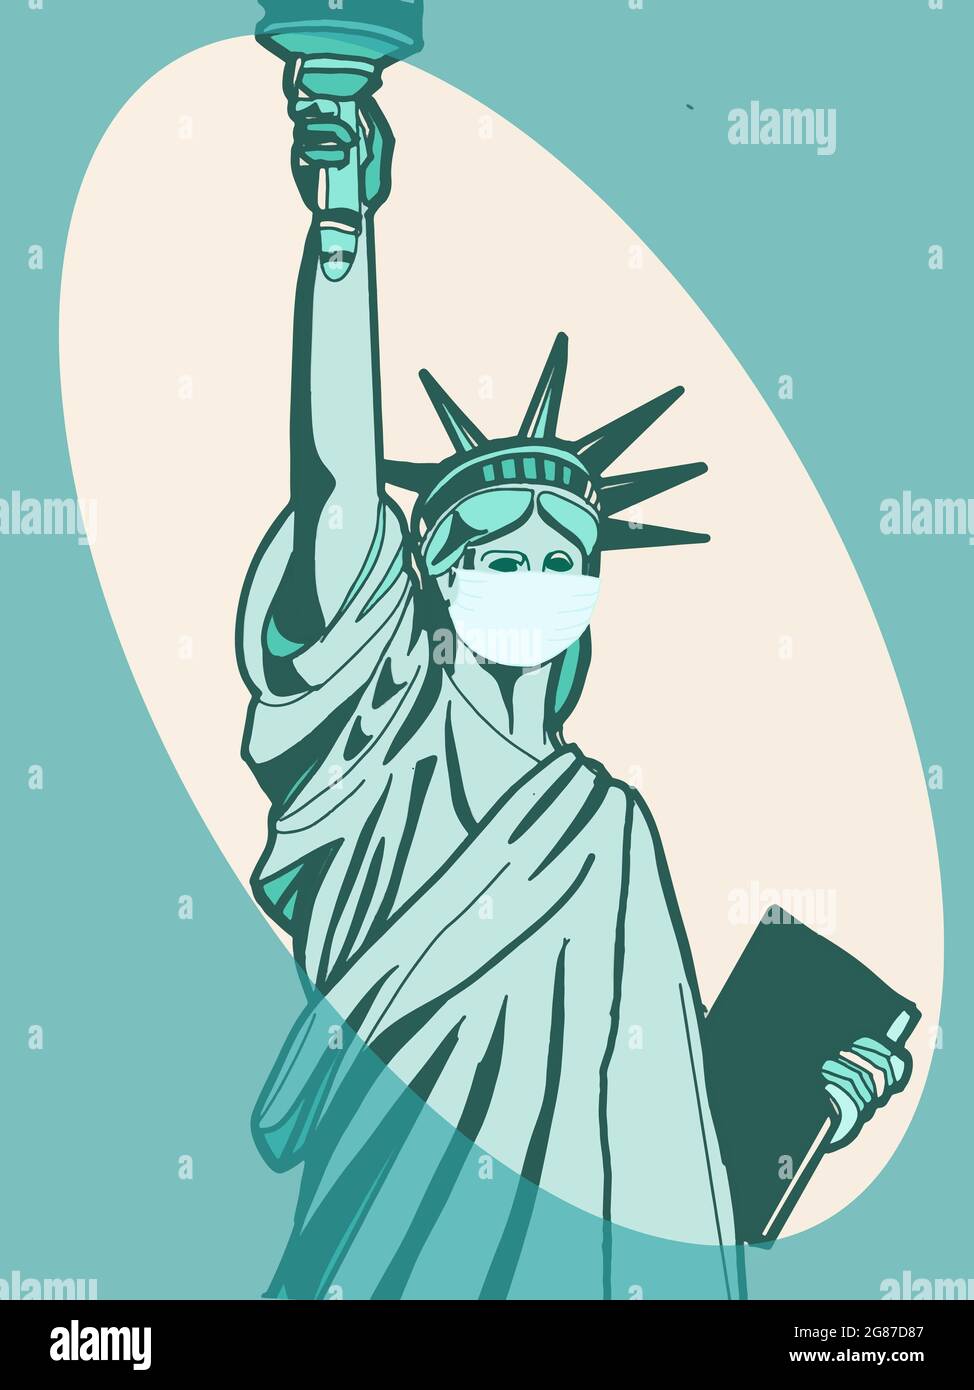 Le symbole de la Statue de la liberté prend un masque pour la pandémie Banque D'Images